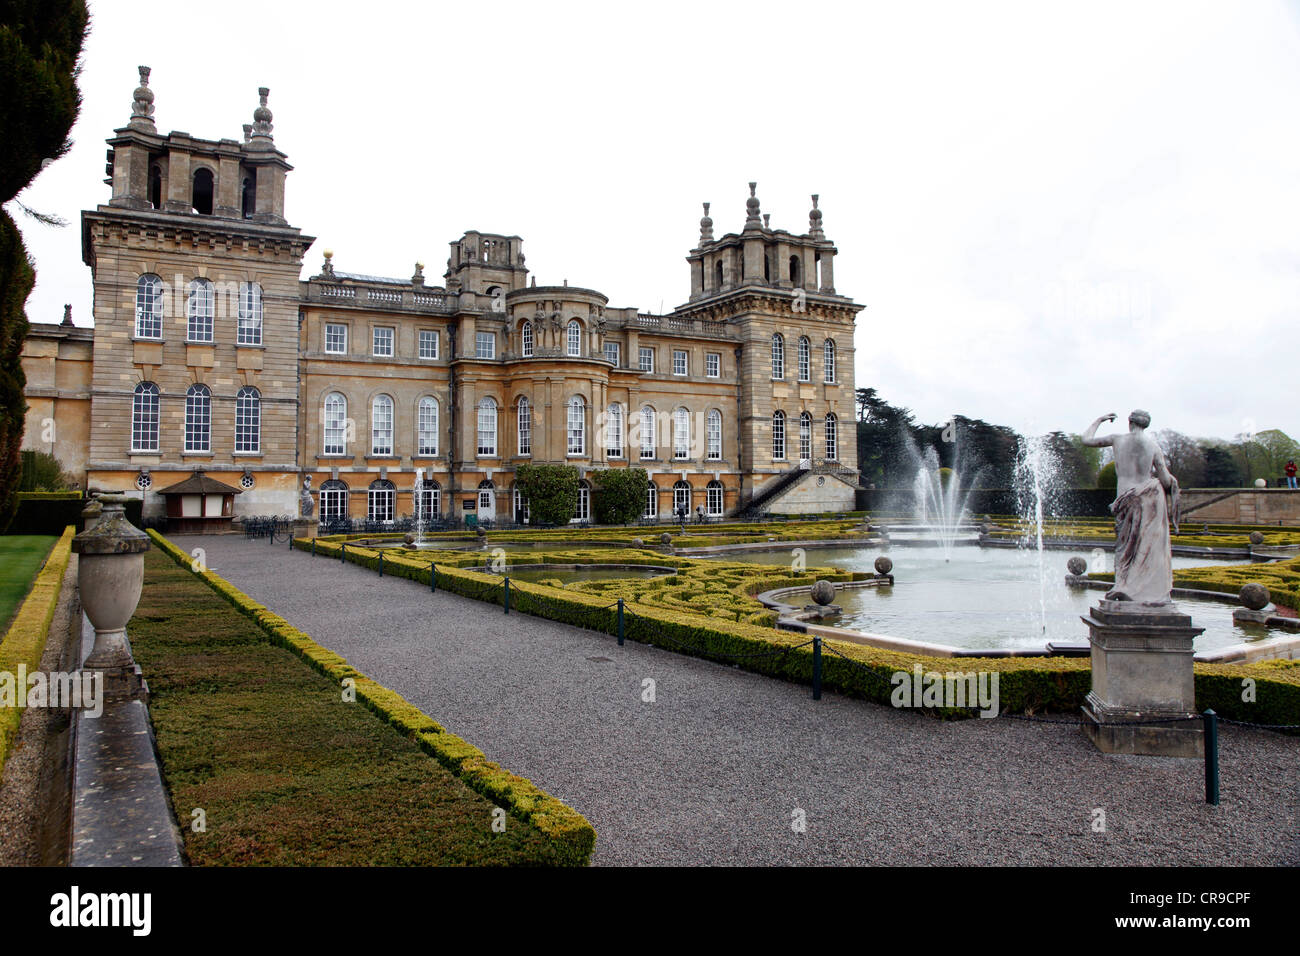 Blenheim Palace, UNESCO-Weltkulturerbe. Schloss, Park und Gärten, Museum. Woodstock, Oxfordshire, Vereinigtes Königreich, Europa. Stockfoto